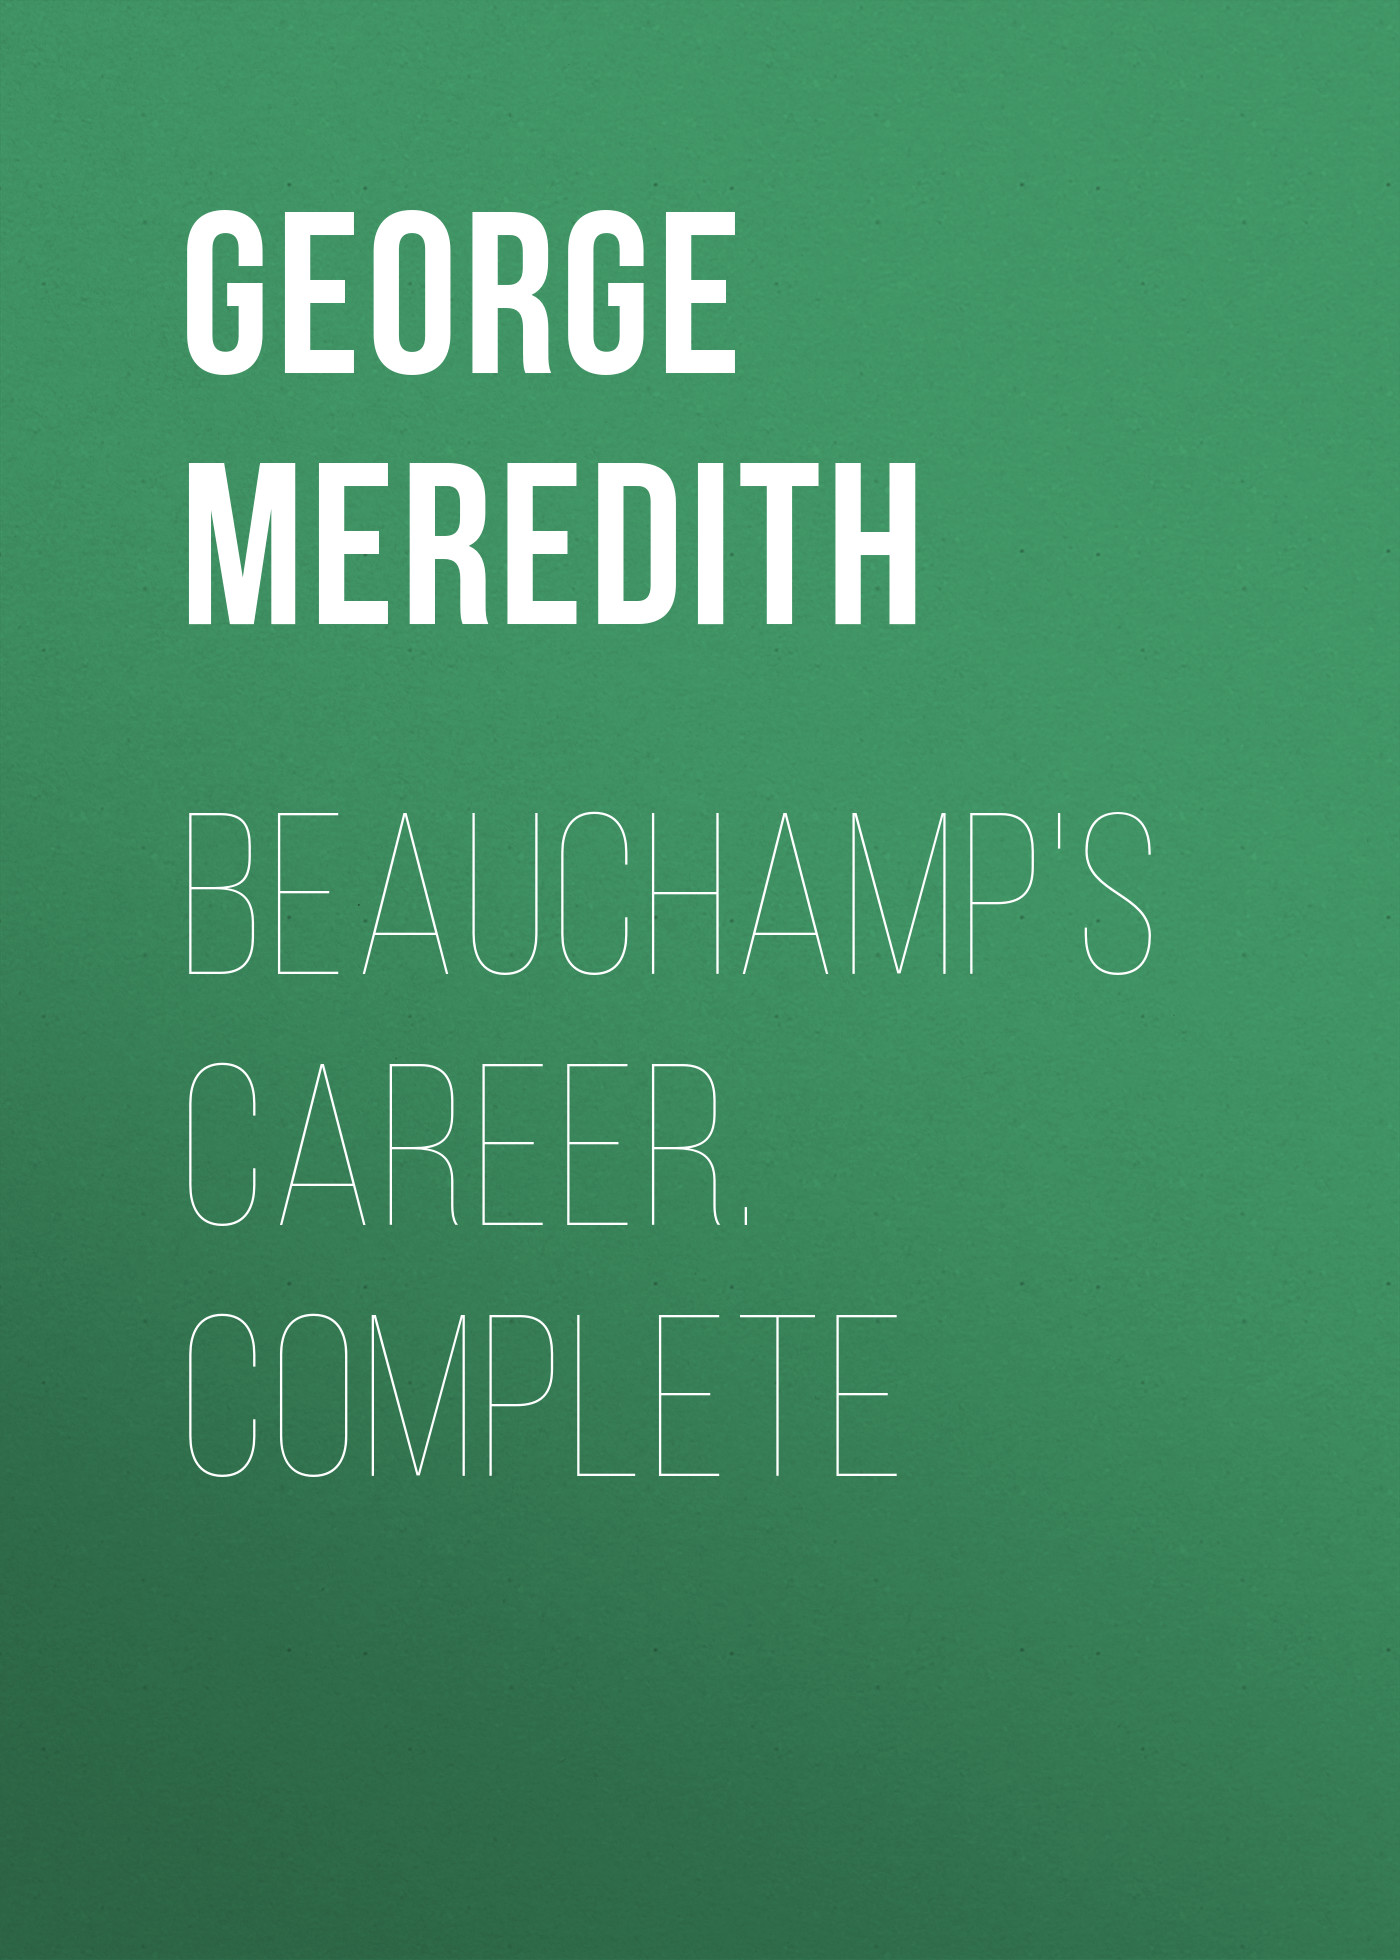 Книга Beauchamp's Career. Complete из серии , созданная George Meredith, может относится к жанру Зарубежная классика, Зарубежная старинная литература. Стоимость электронной книги Beauchamp's Career. Complete с идентификатором 36096157 составляет 0 руб.